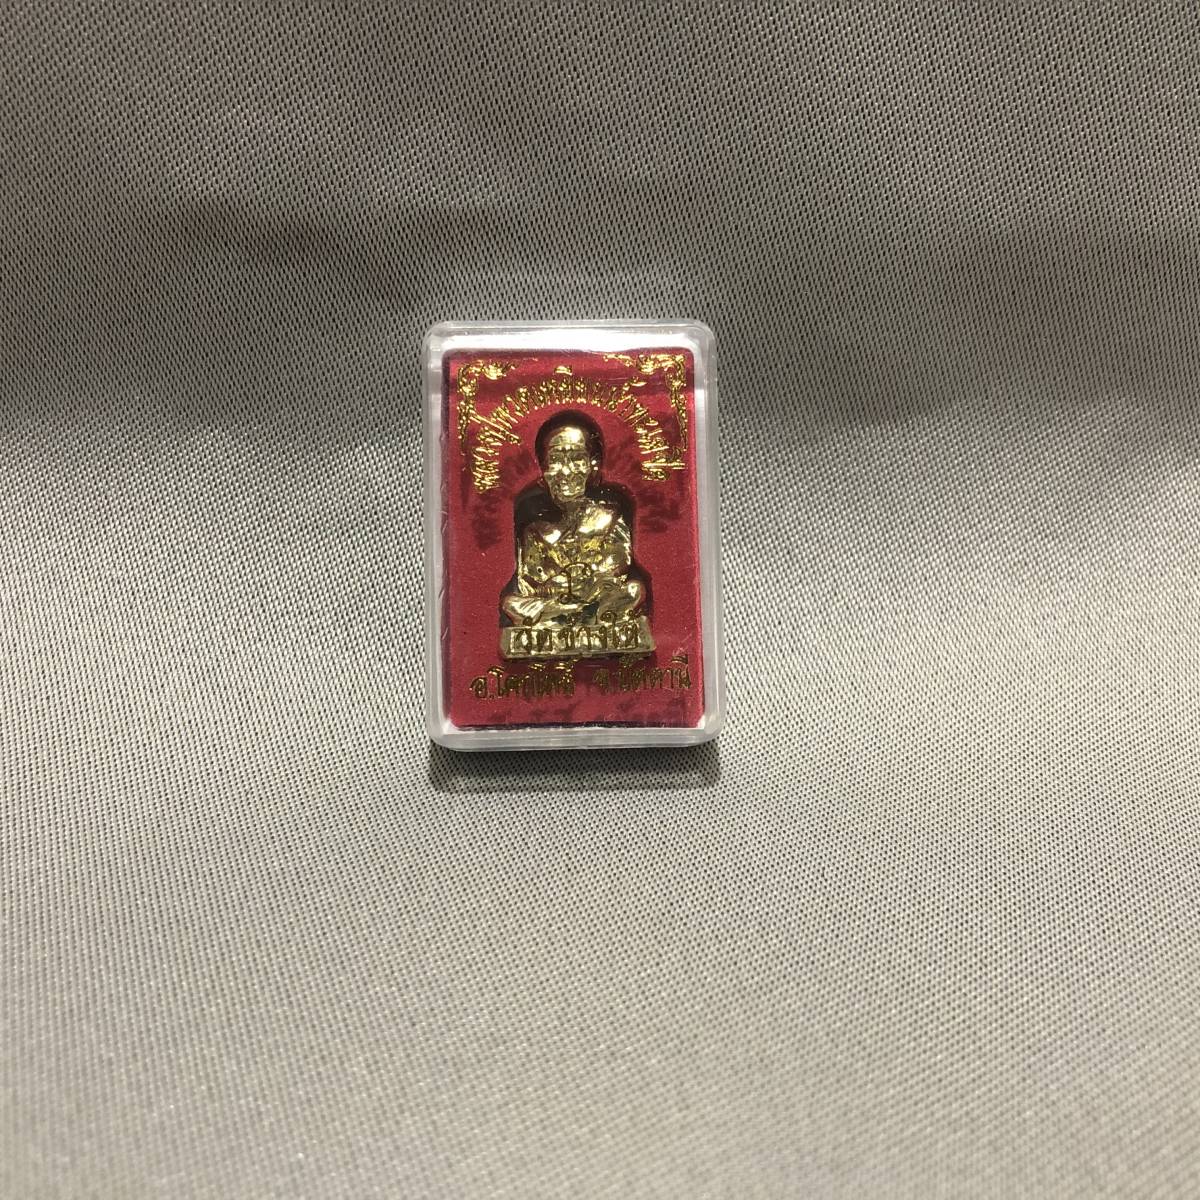 新品・即決・タイで購入した、金属製の小さな小さな高僧’ルアンプートゥアット’像・ケース入り・金_画像1